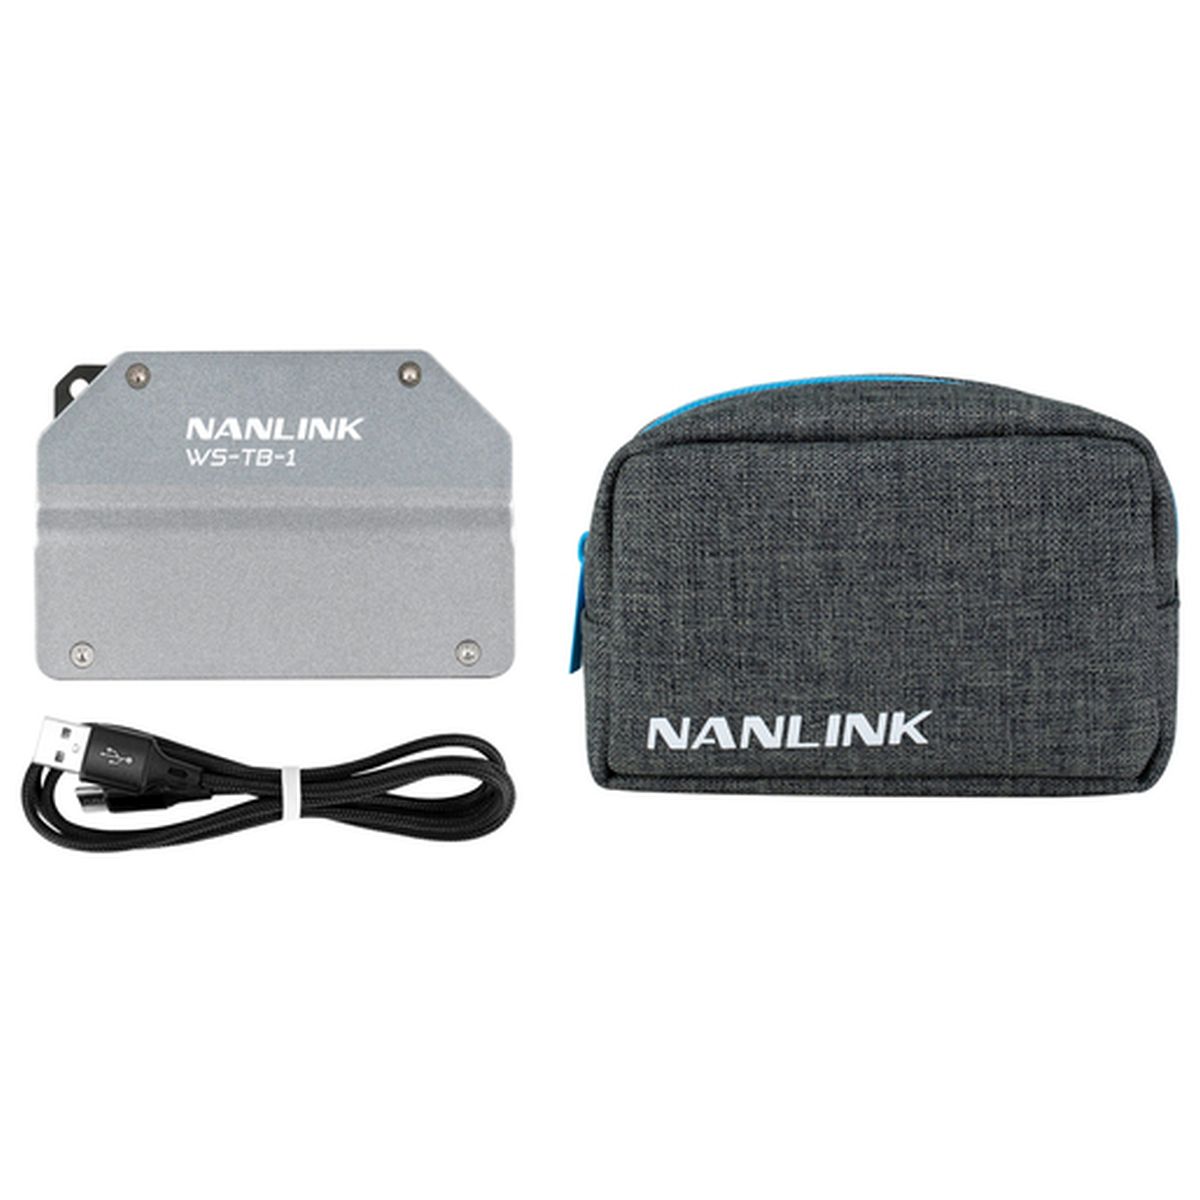 Nanlite WS-TB-1 NANLINK Box